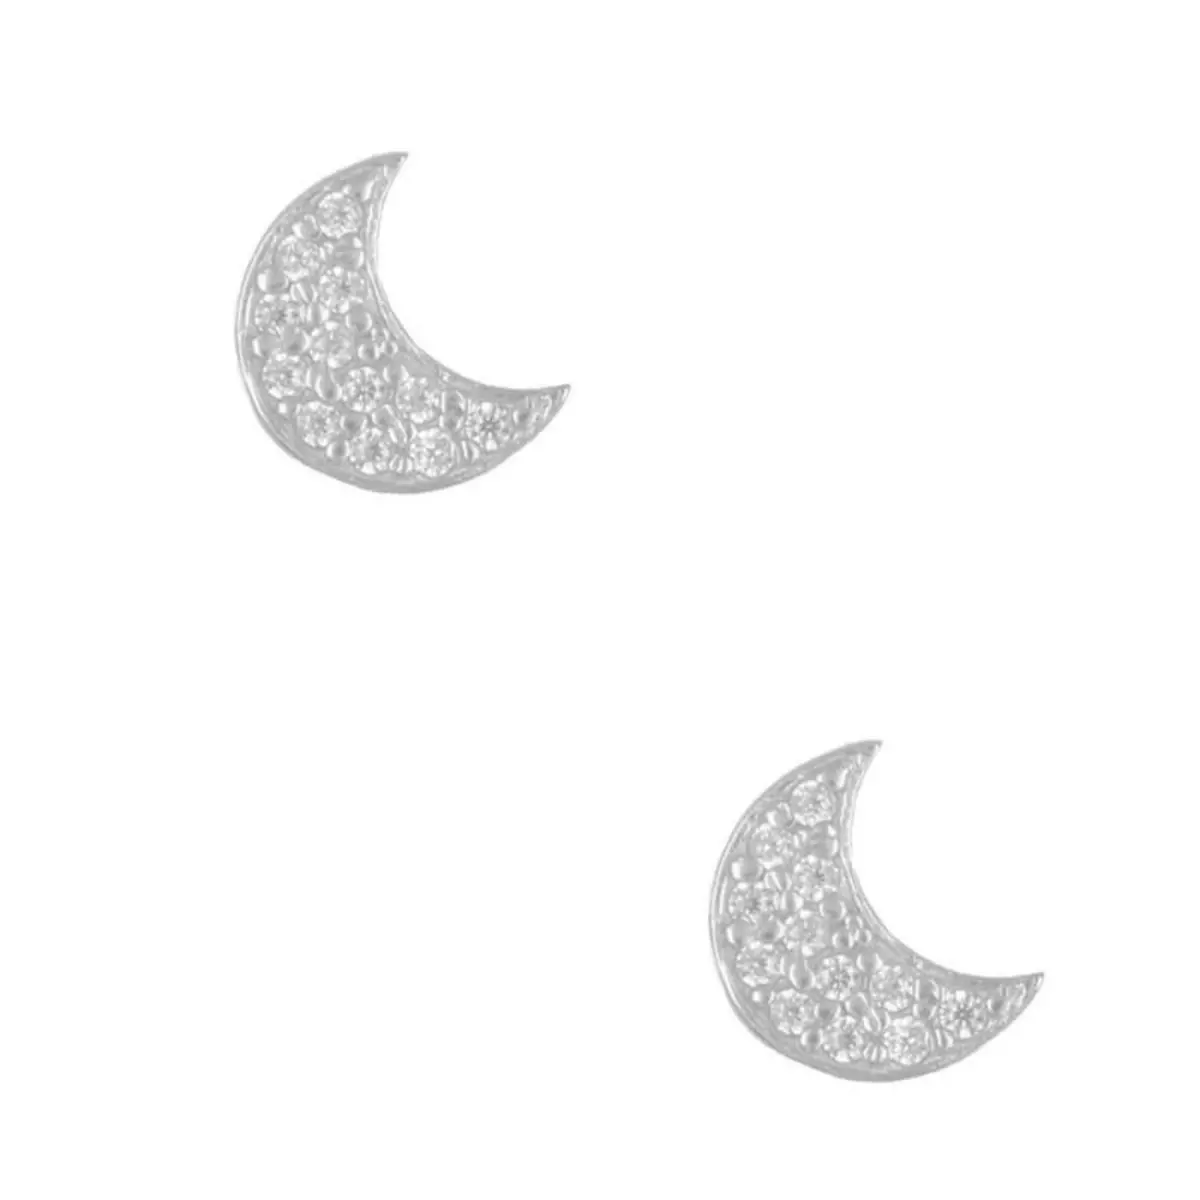 L'ATELIER D'AZUR Boucles d'Oreilles Or Blanc Serties de Zirconiums - Lune